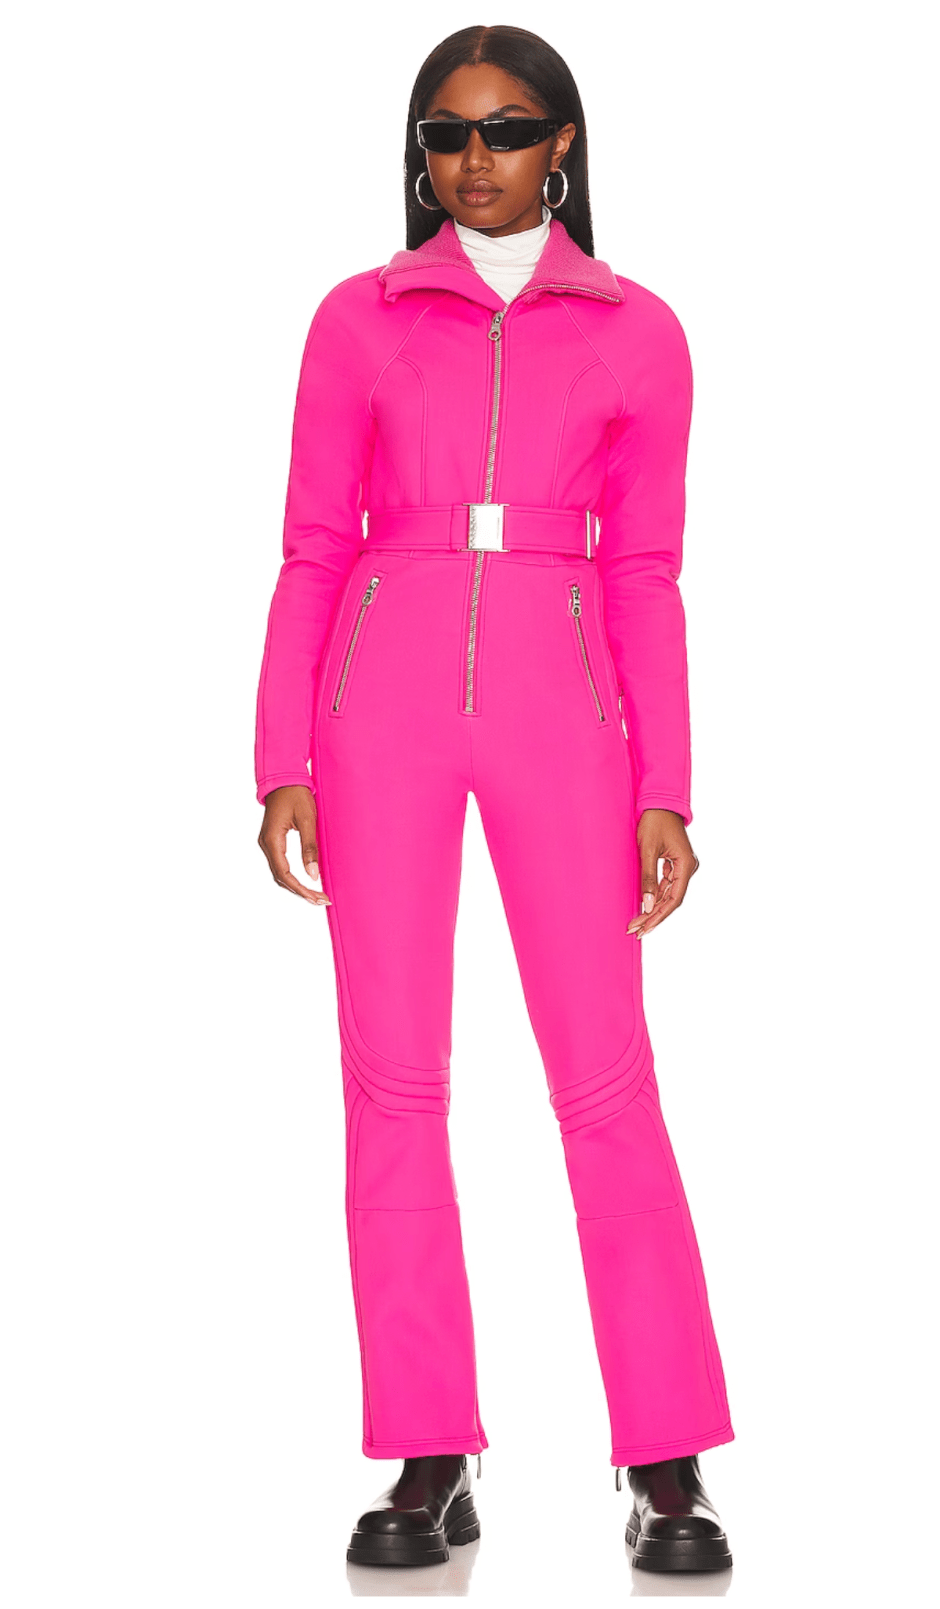 Cordova Pink Modena Ski Suit